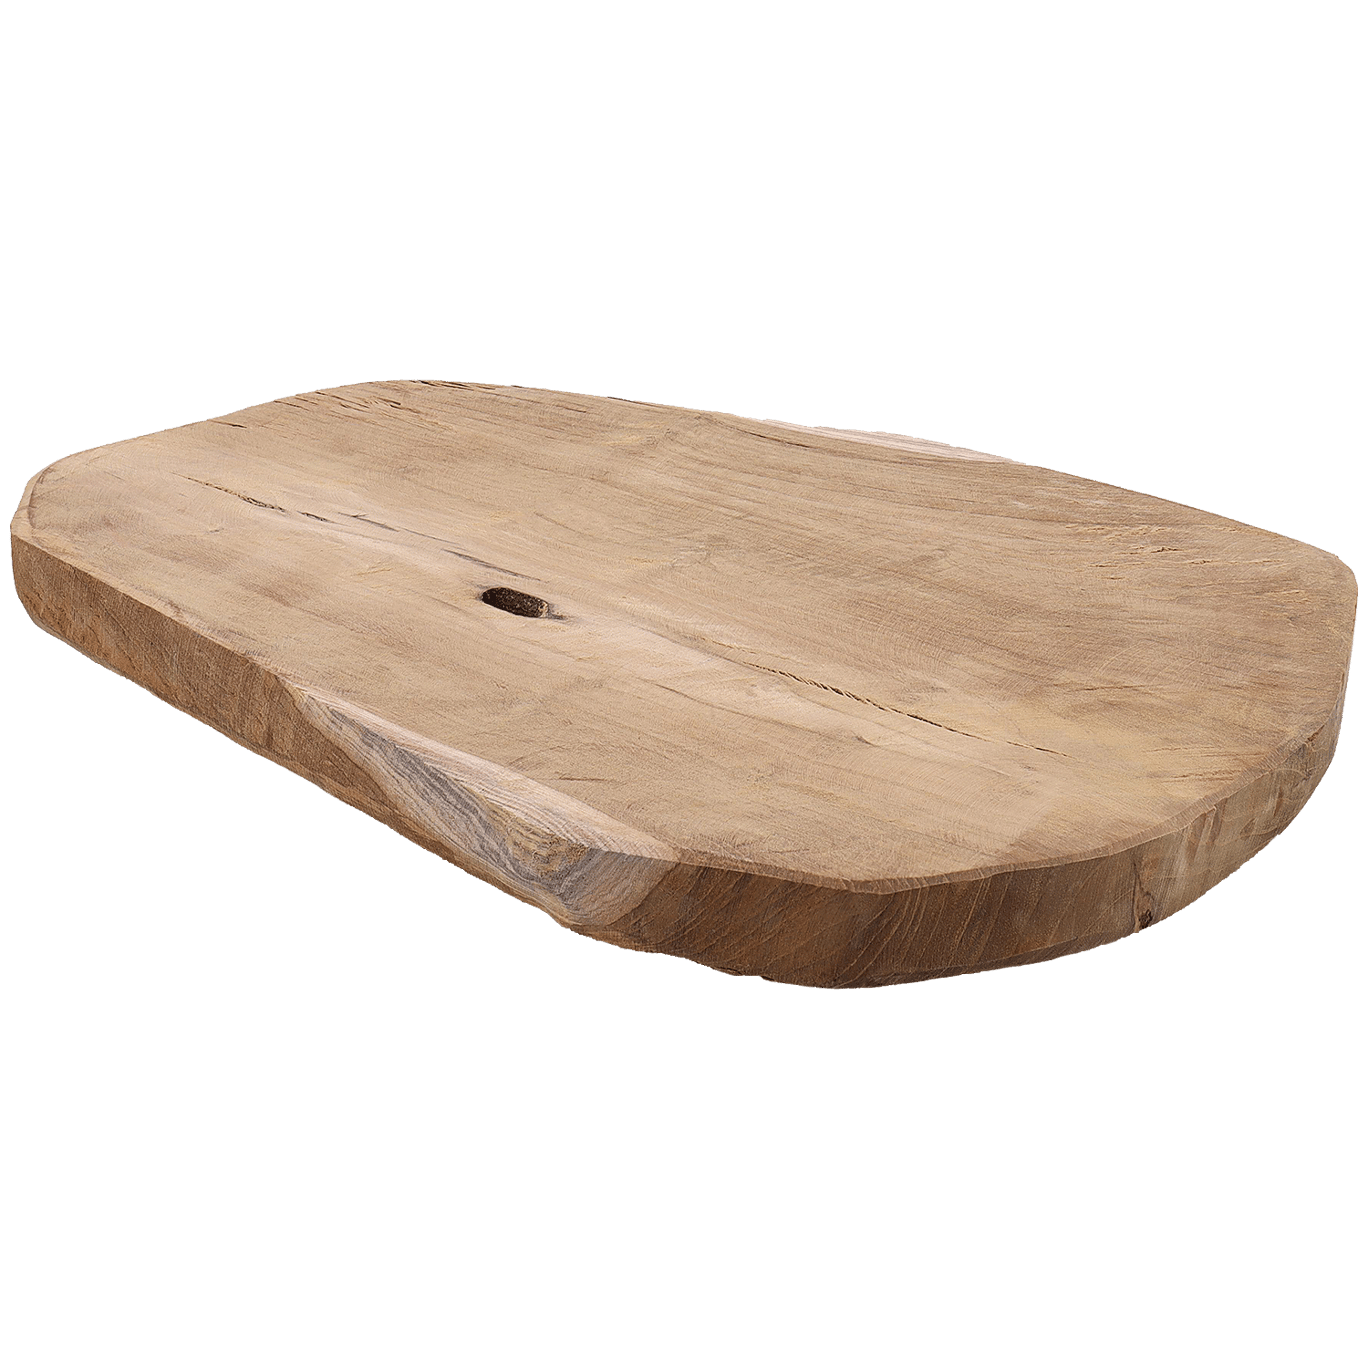 Plato de madera de teca